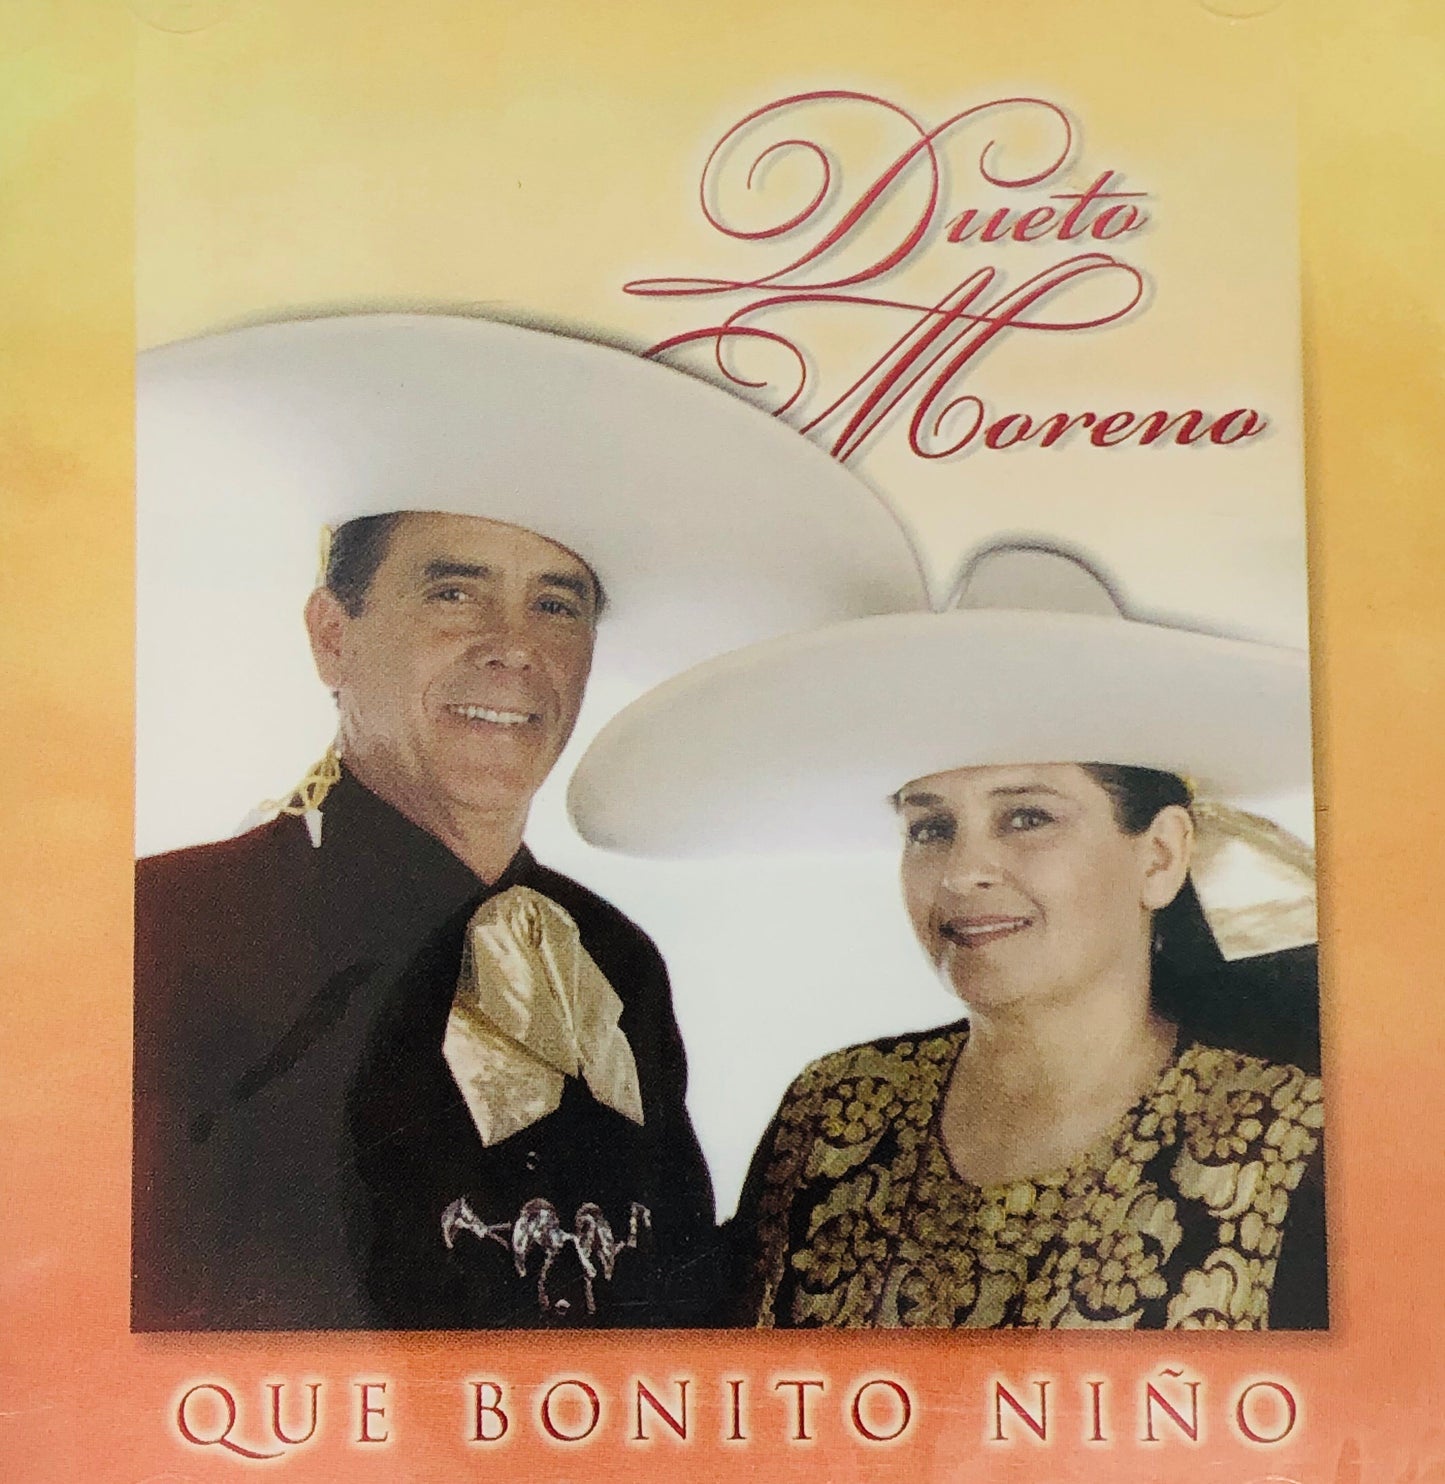 CD - Que Bonito Niño - Dueto Moreno